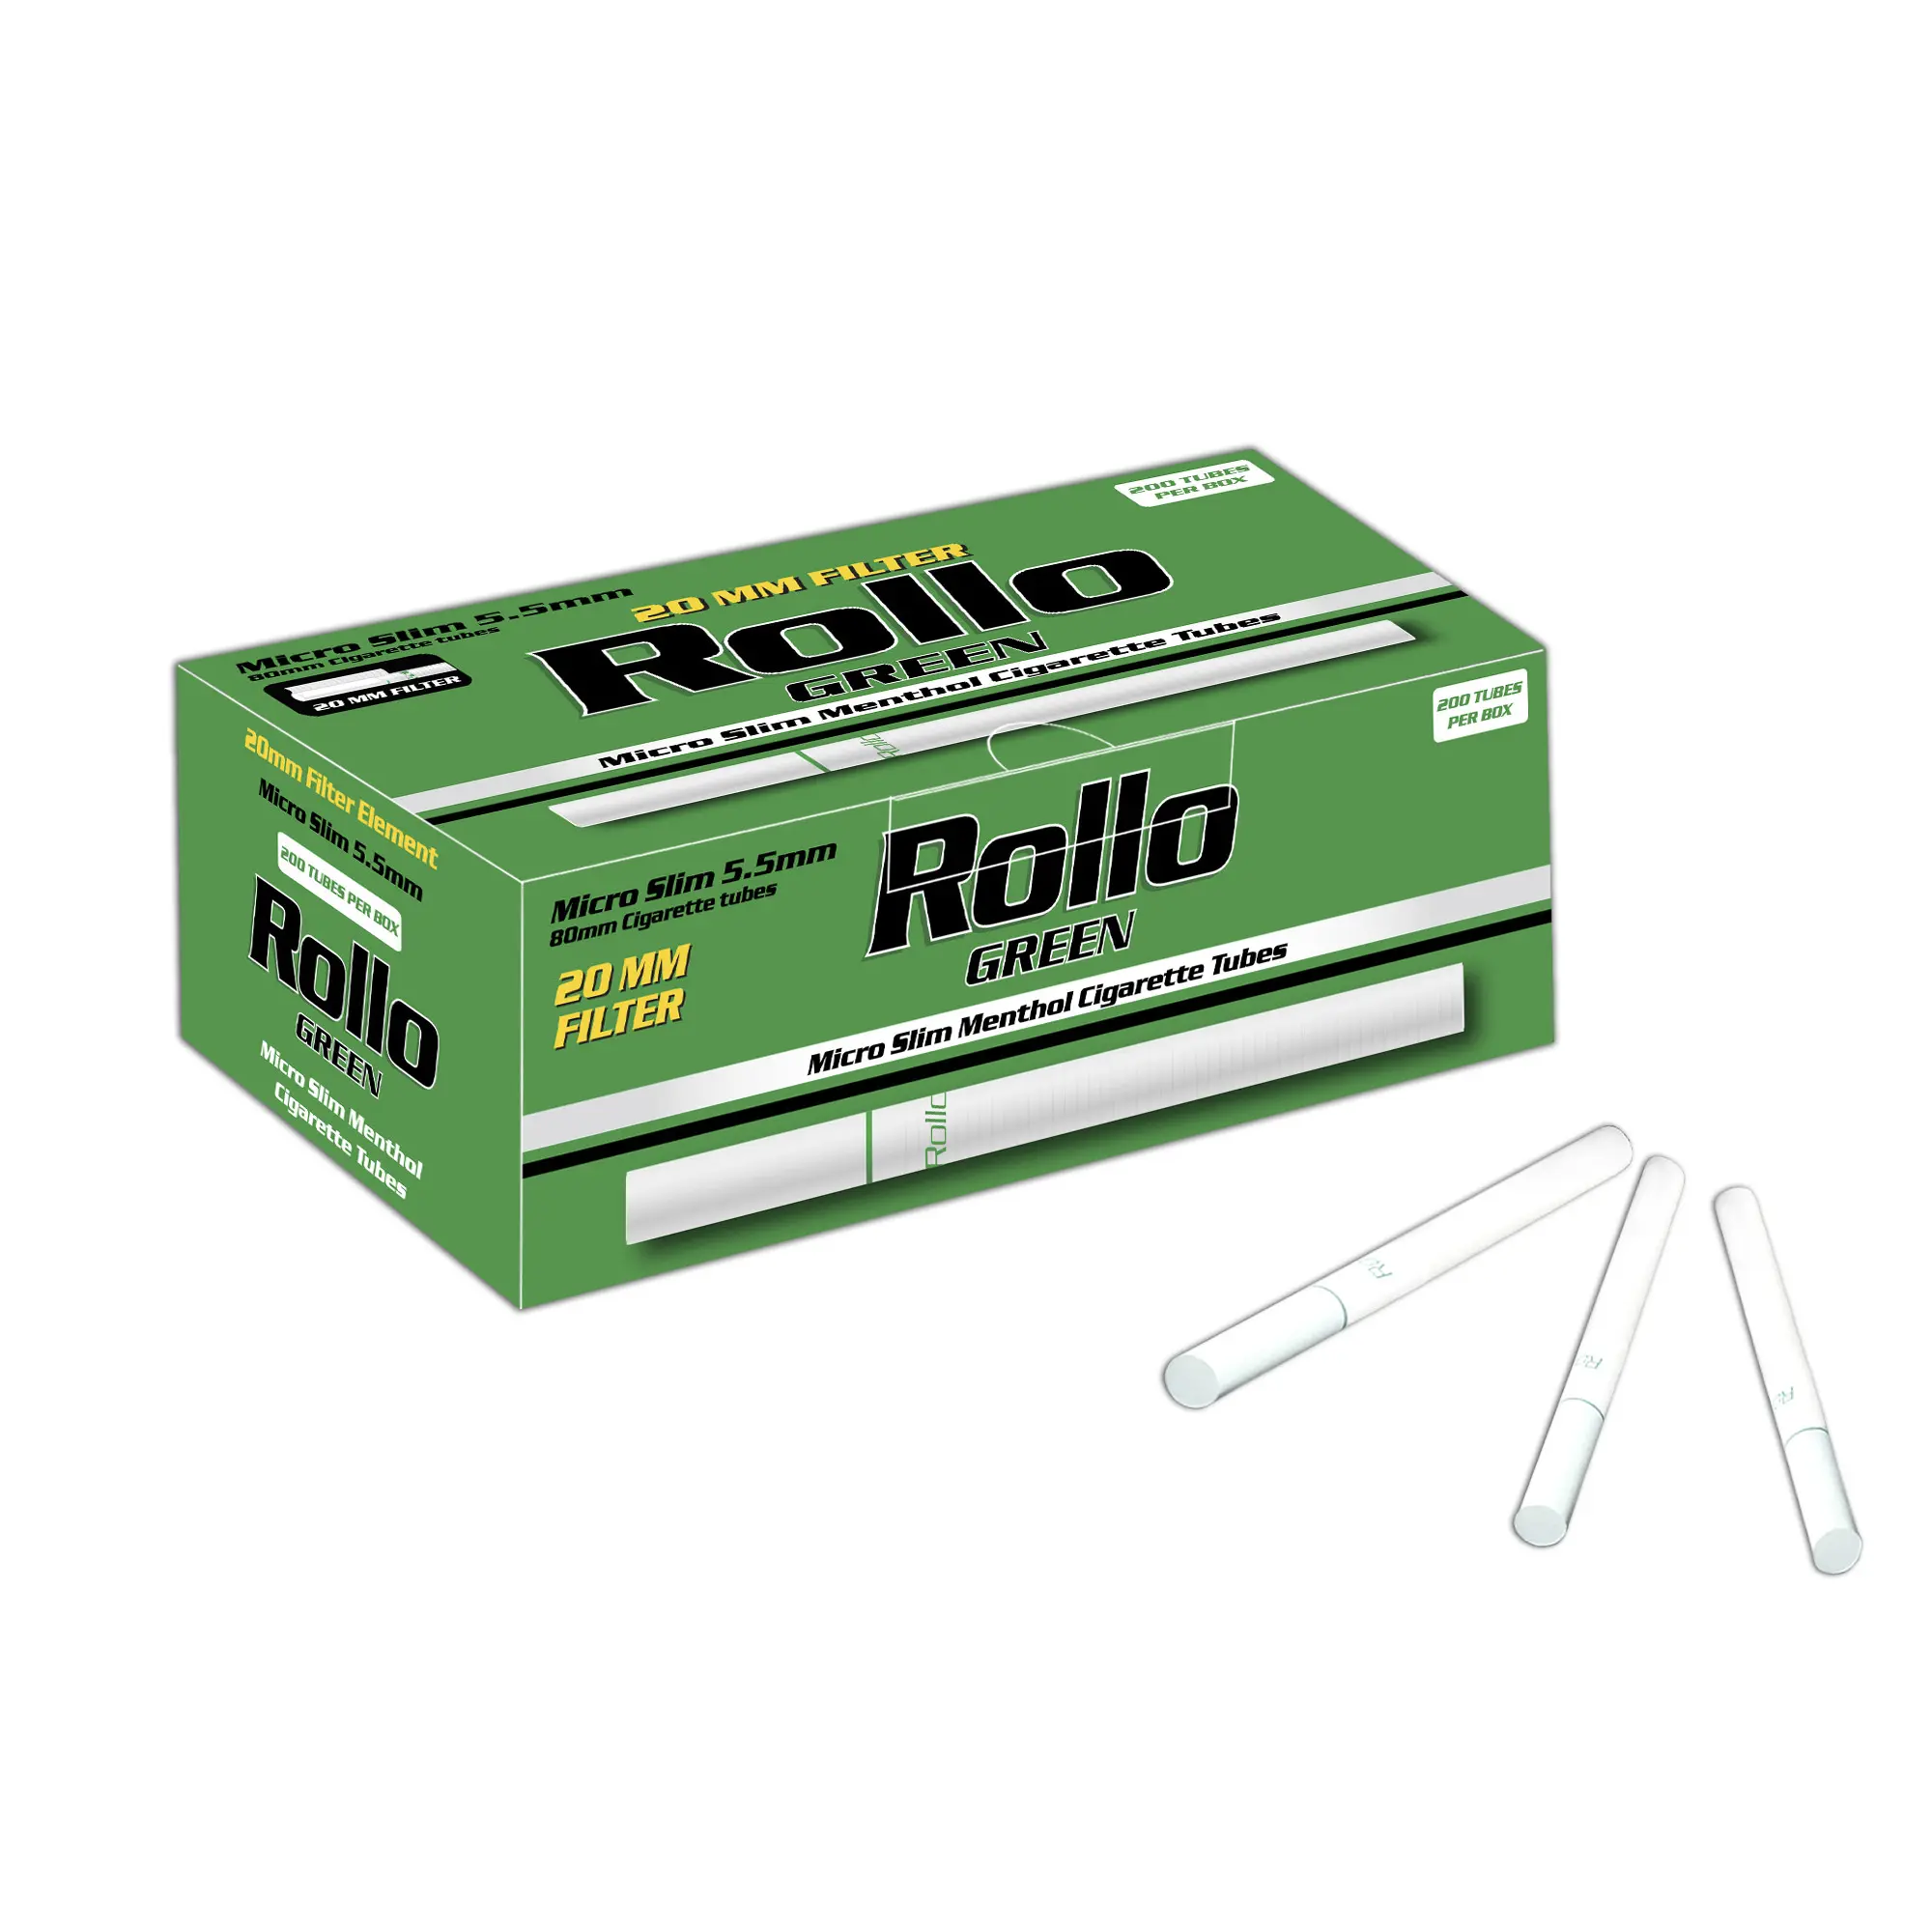 Premium e di alta qualità Micro Slim filtro per sigarette verde Rollo (mentolo) 80/20 200 tubi per scatola